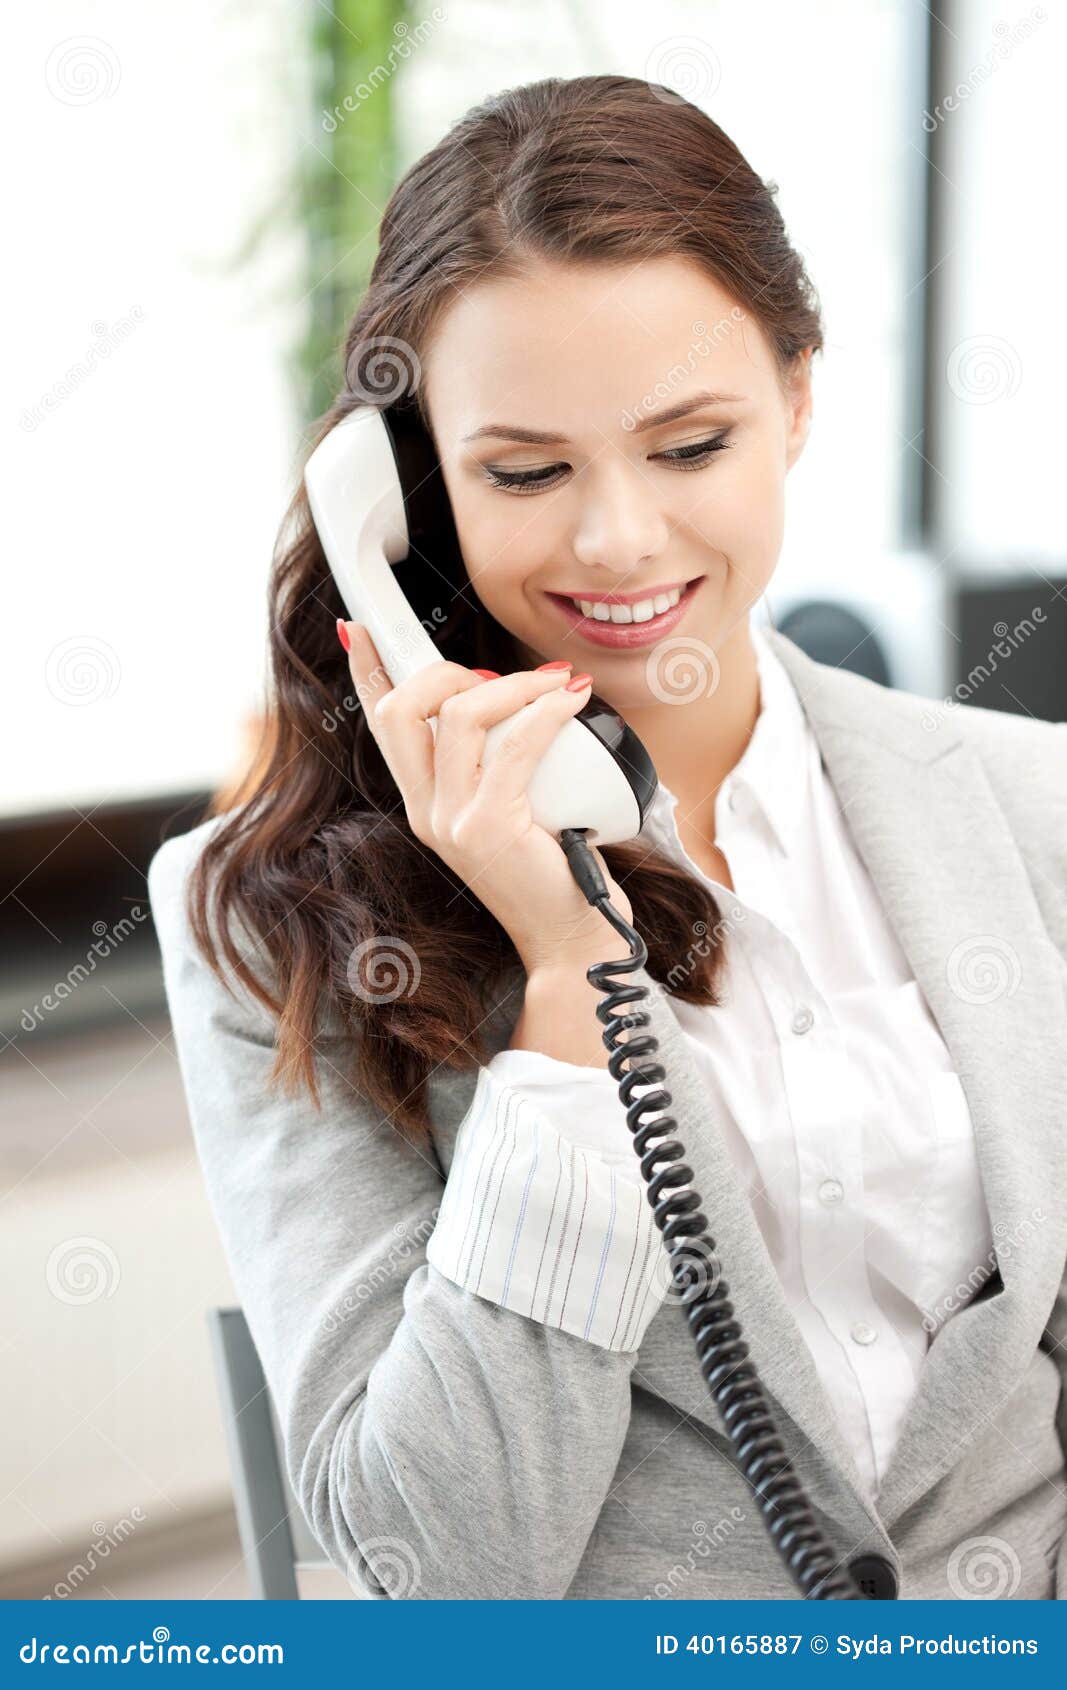 Жена разговаривает по телефону а ее. Женщина с телефонной трубкой. Женщина с трубкой телефона. Девушка с телефоном. Девушка разговаривает по телефону.